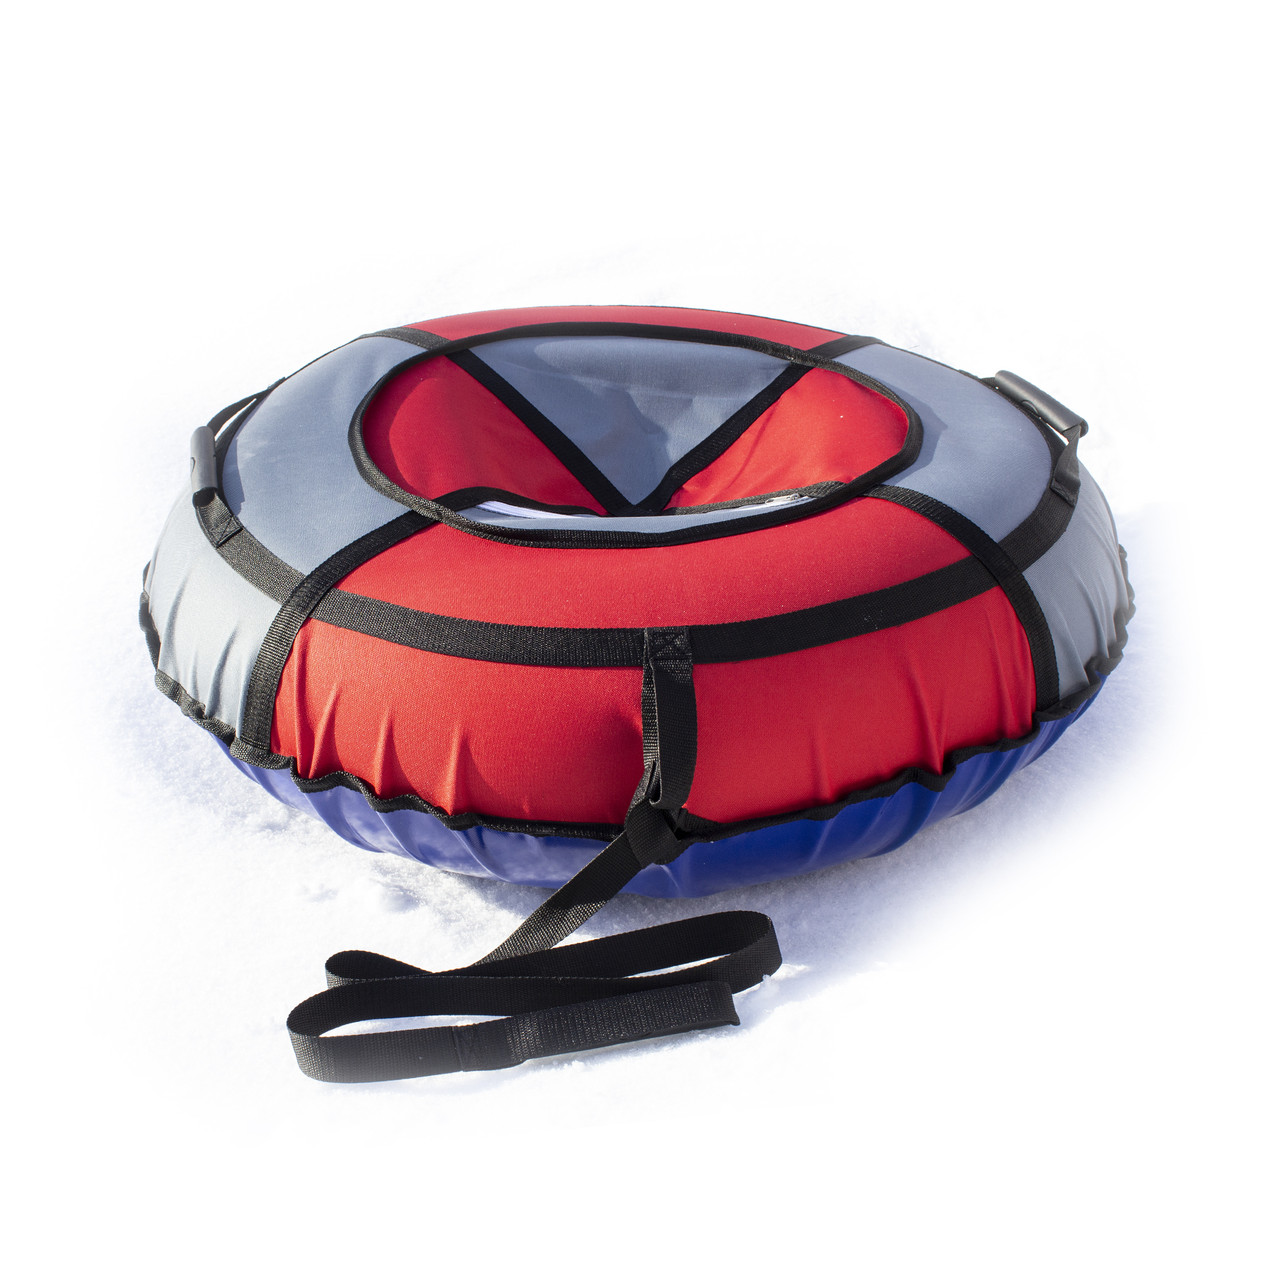 Тюбінг надувні санки ватрушка d 120 см серія Прокат Посилена Червоно - Сірого кольору для дітей і дорослих